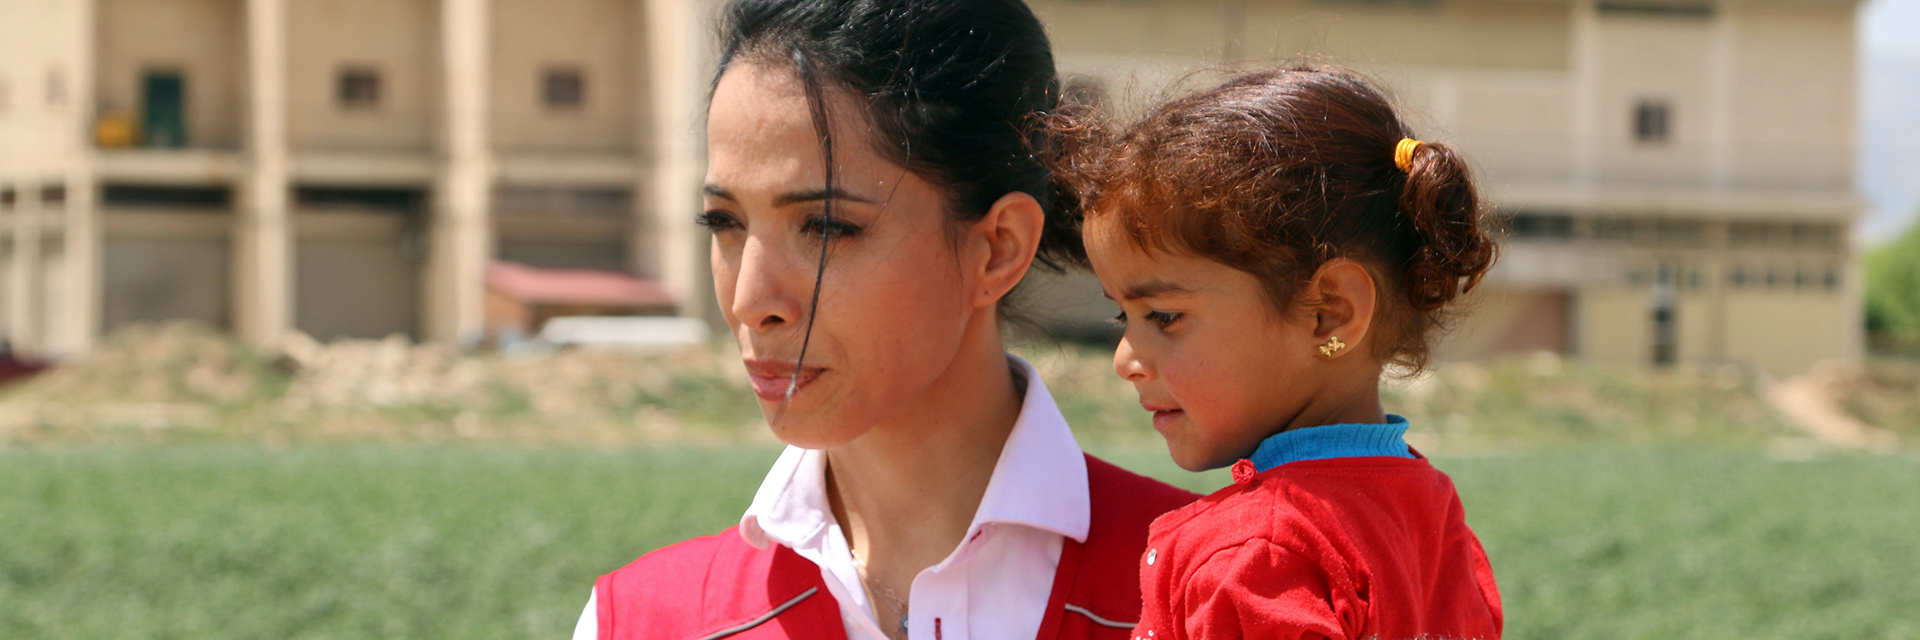 Foto: Zohre Esmaeli mit einem libanesischem Mädchen auf dem Arm